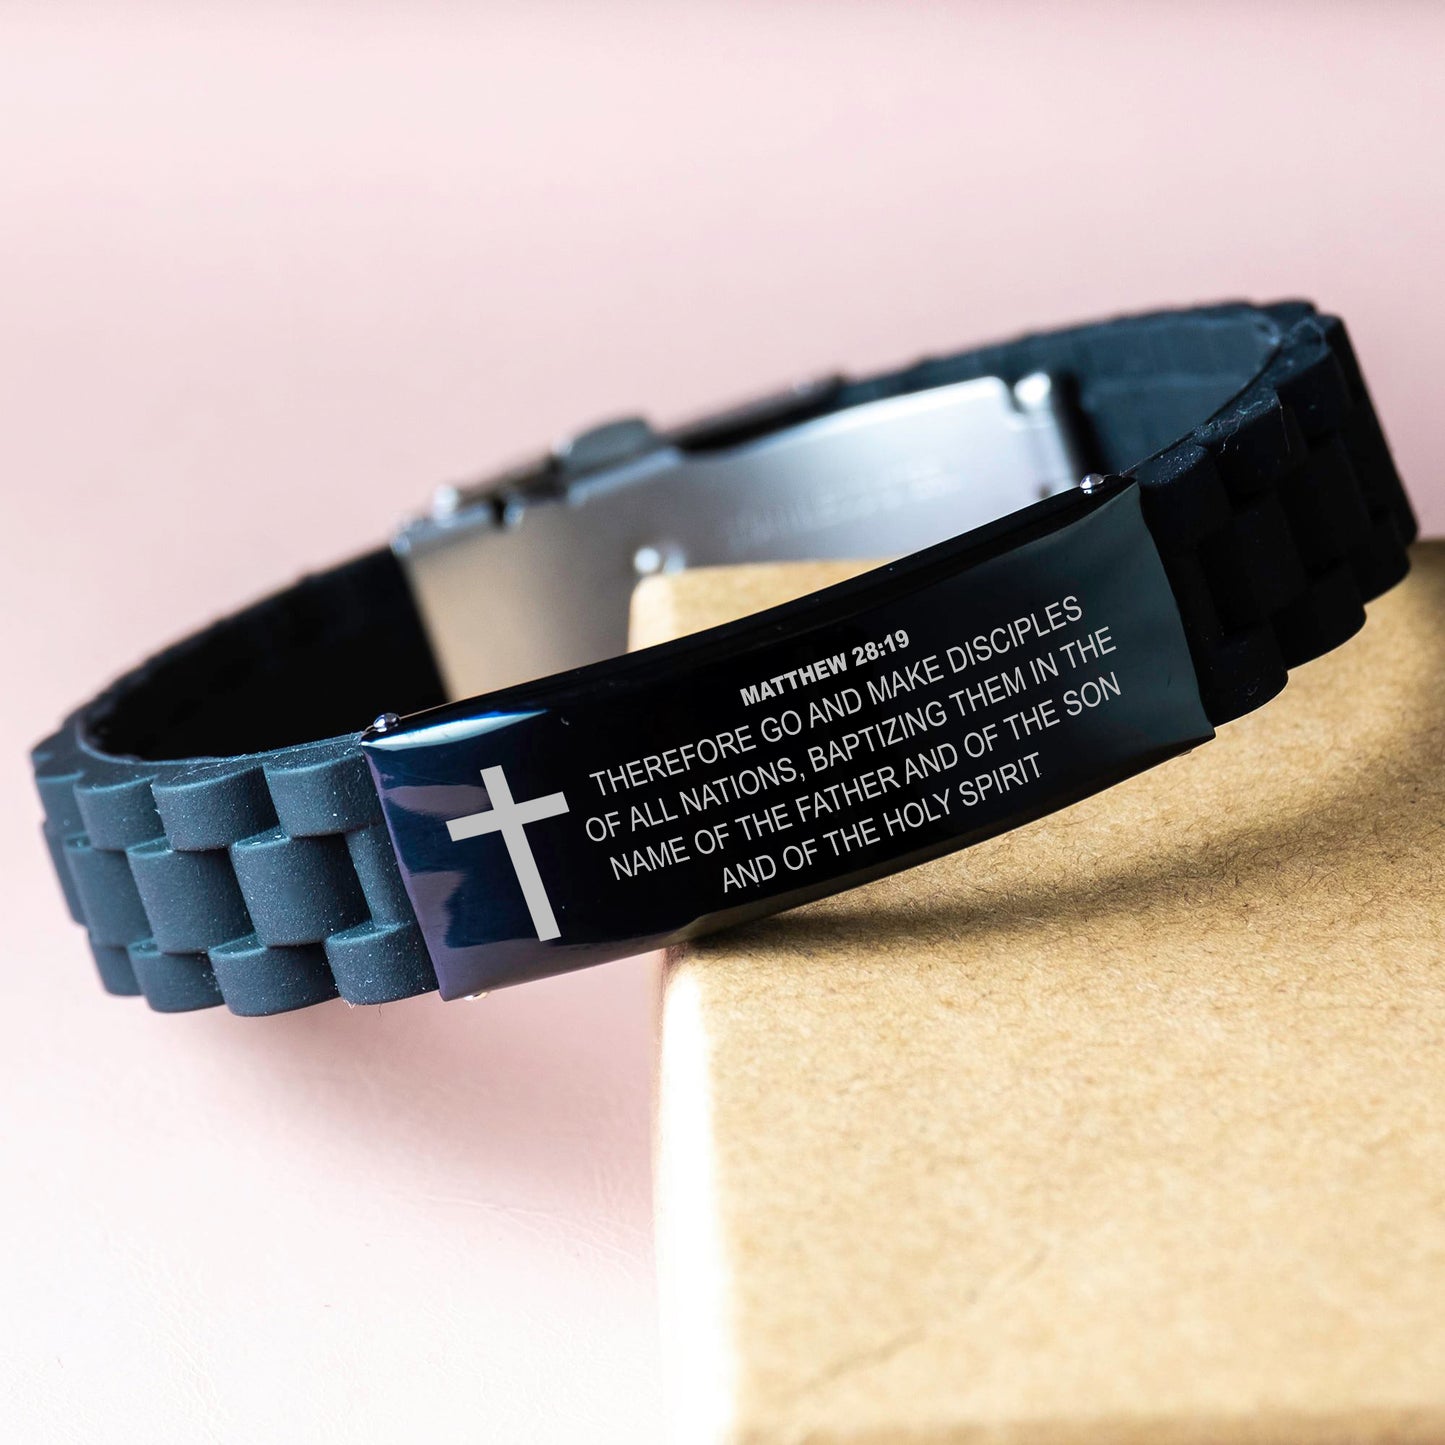 Matthew 28 19 Bracelet, Bible Verse Bracelet, Christian Bracelet, Black Stainless Steel Silicone Bracelet, Gift for Christian